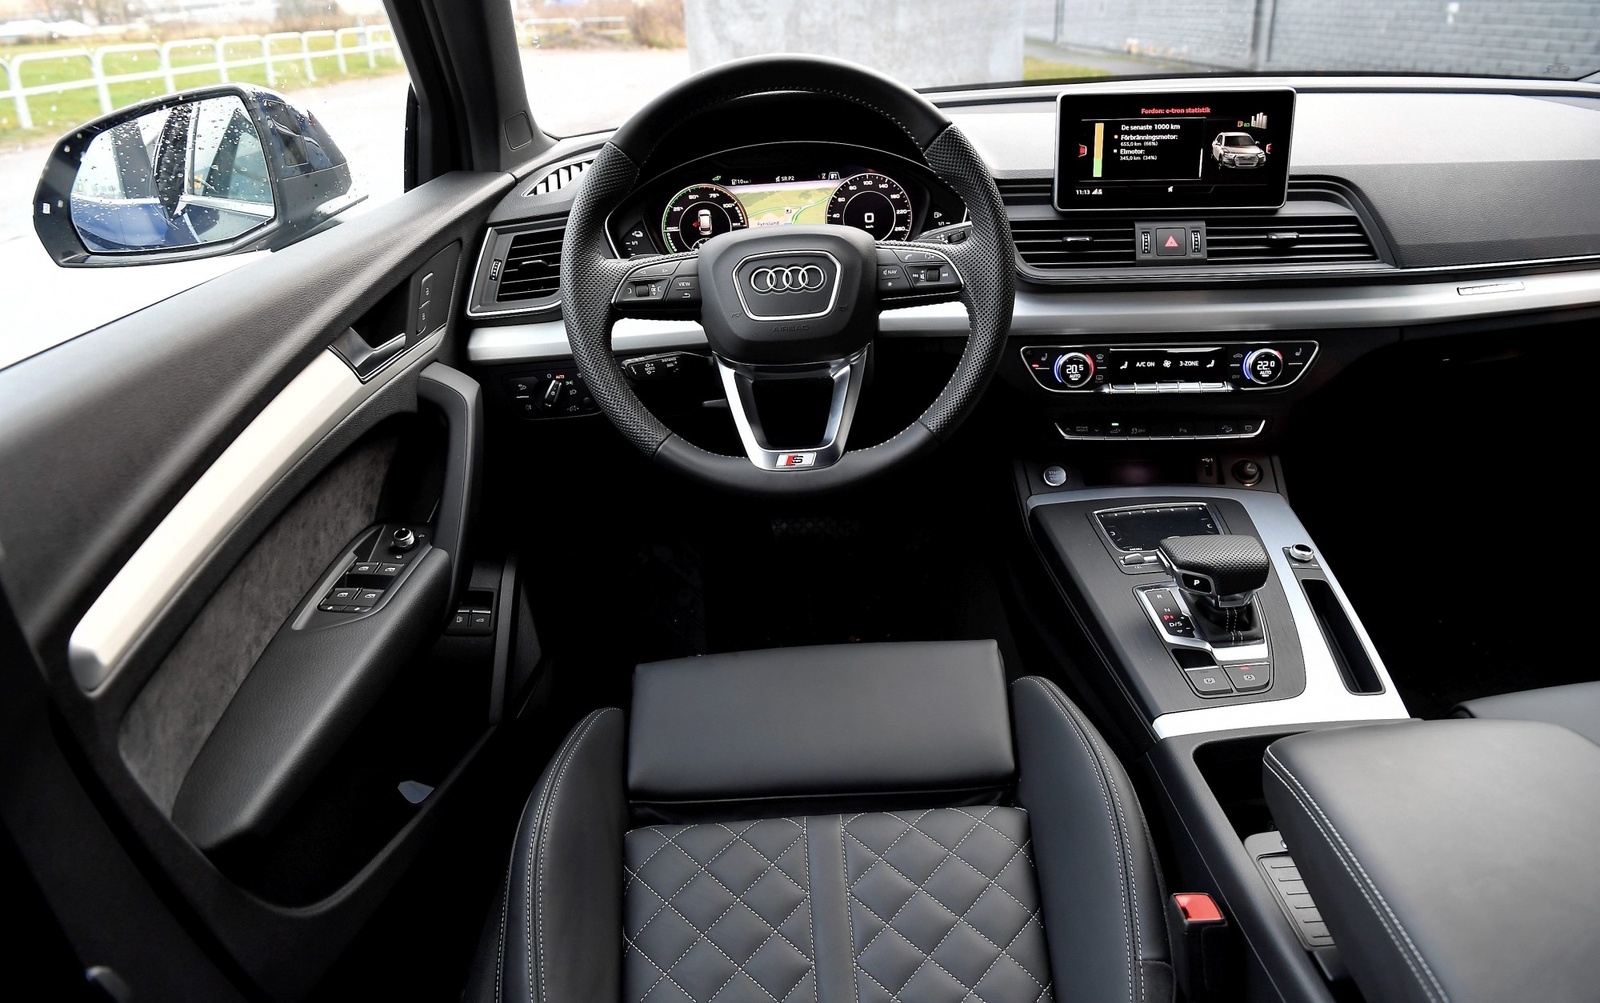 En lite spretig förarmiljö, sedan Q5 lanserades har Audi hunnit introducera en ny inredningsdesign. Men det mesta funkar bra och det är hög nivå på menysystem och ergonomi.